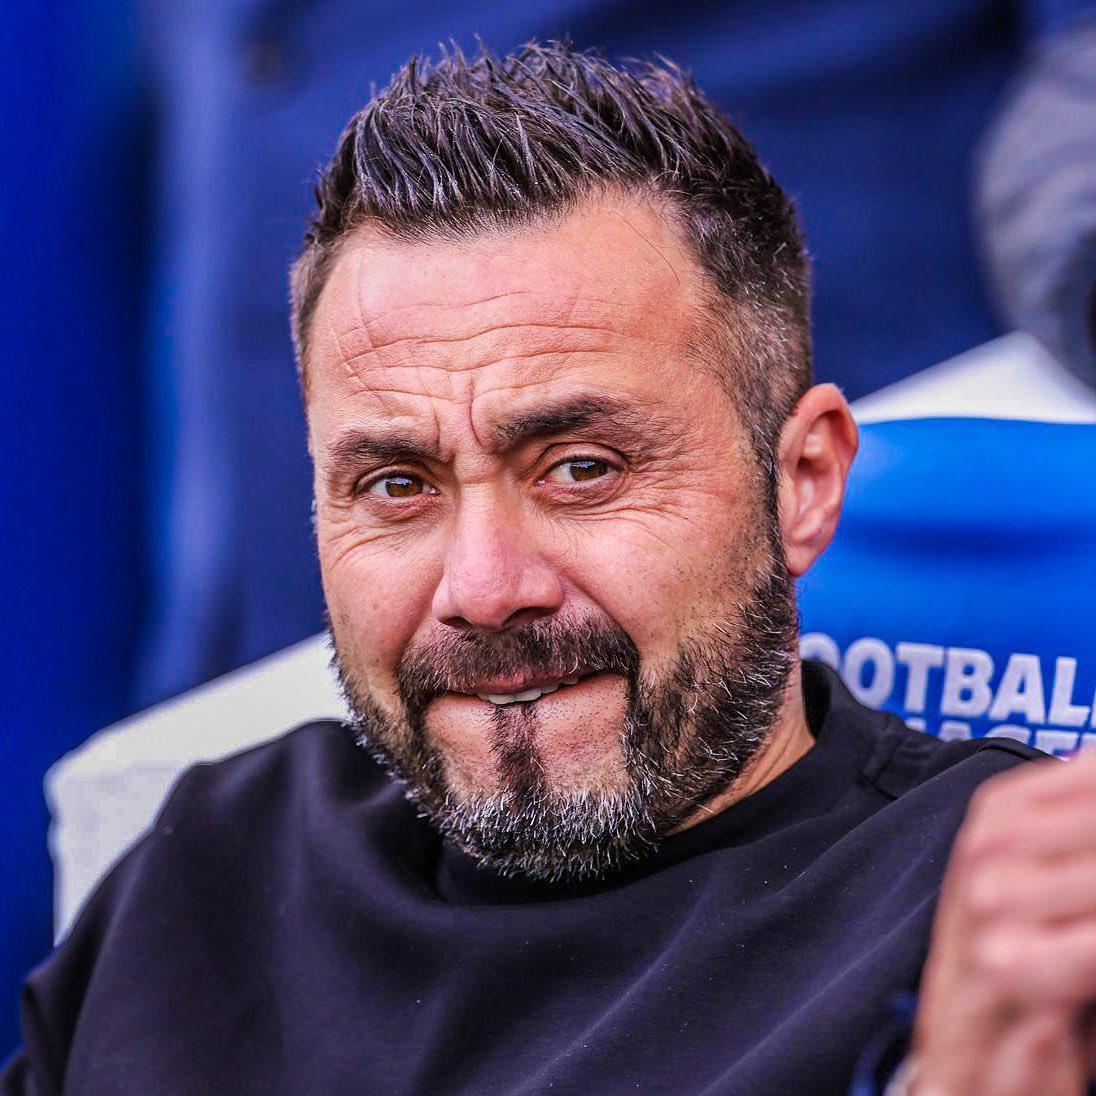 De Zerbi vai deixar o comando do Brighton ao final da temporada.

Qual clube seria um bom destino pro treinador italiano?